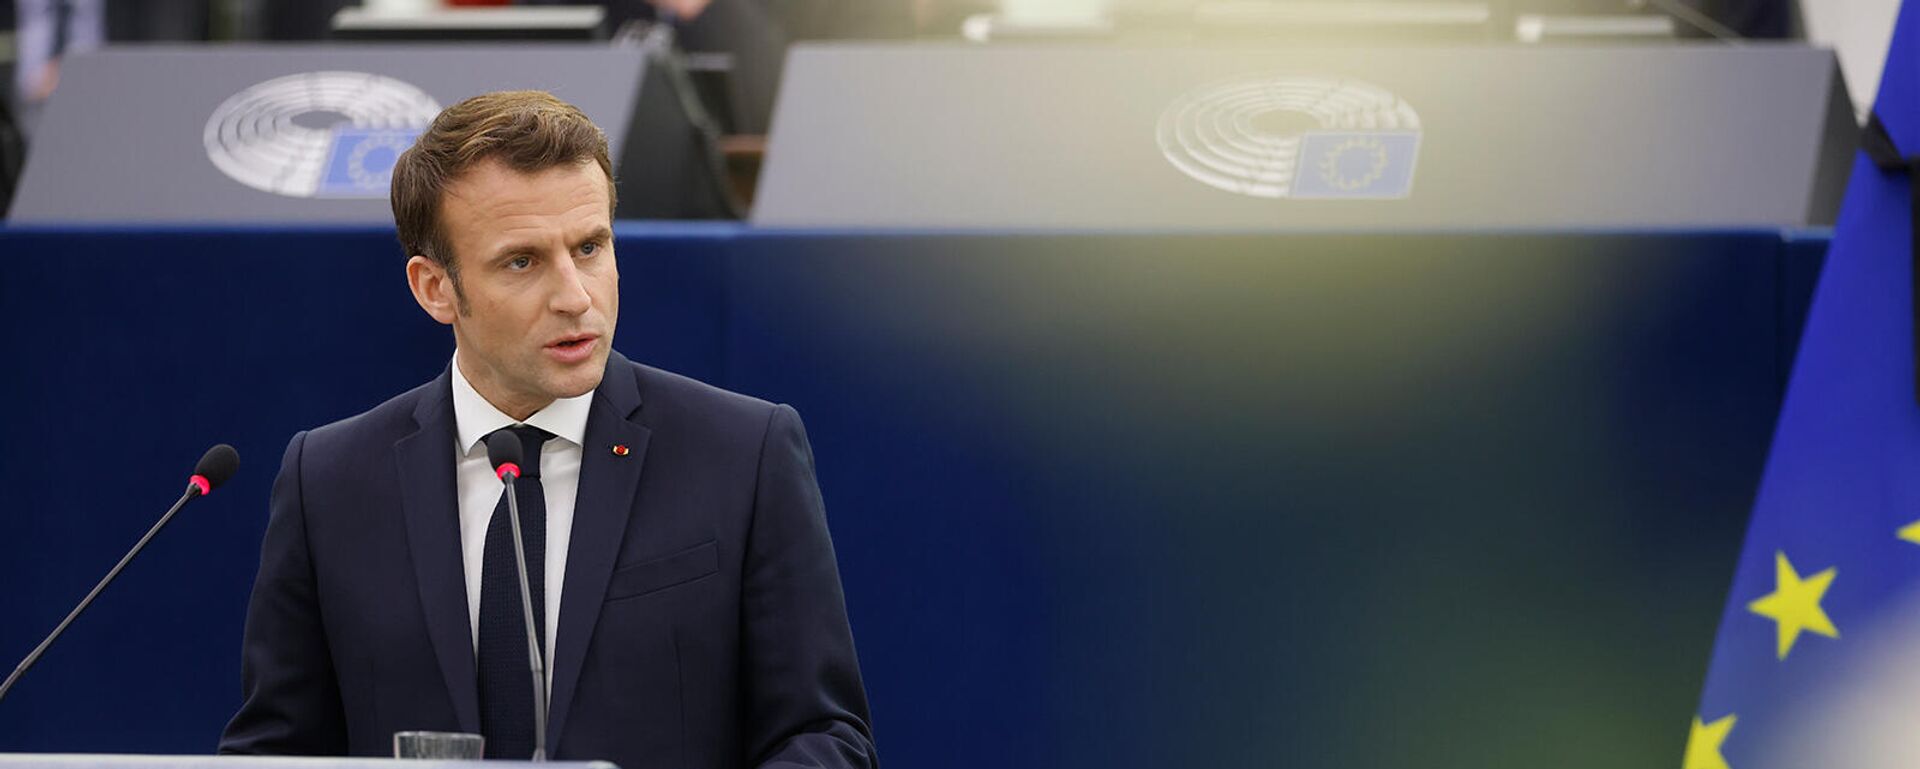 Президент Франции Эммануэль Макрон выступает с речью в Европейском парламенте (17 января 2022). Страсбург - Sputnik Армения, 1920, 19.01.2022